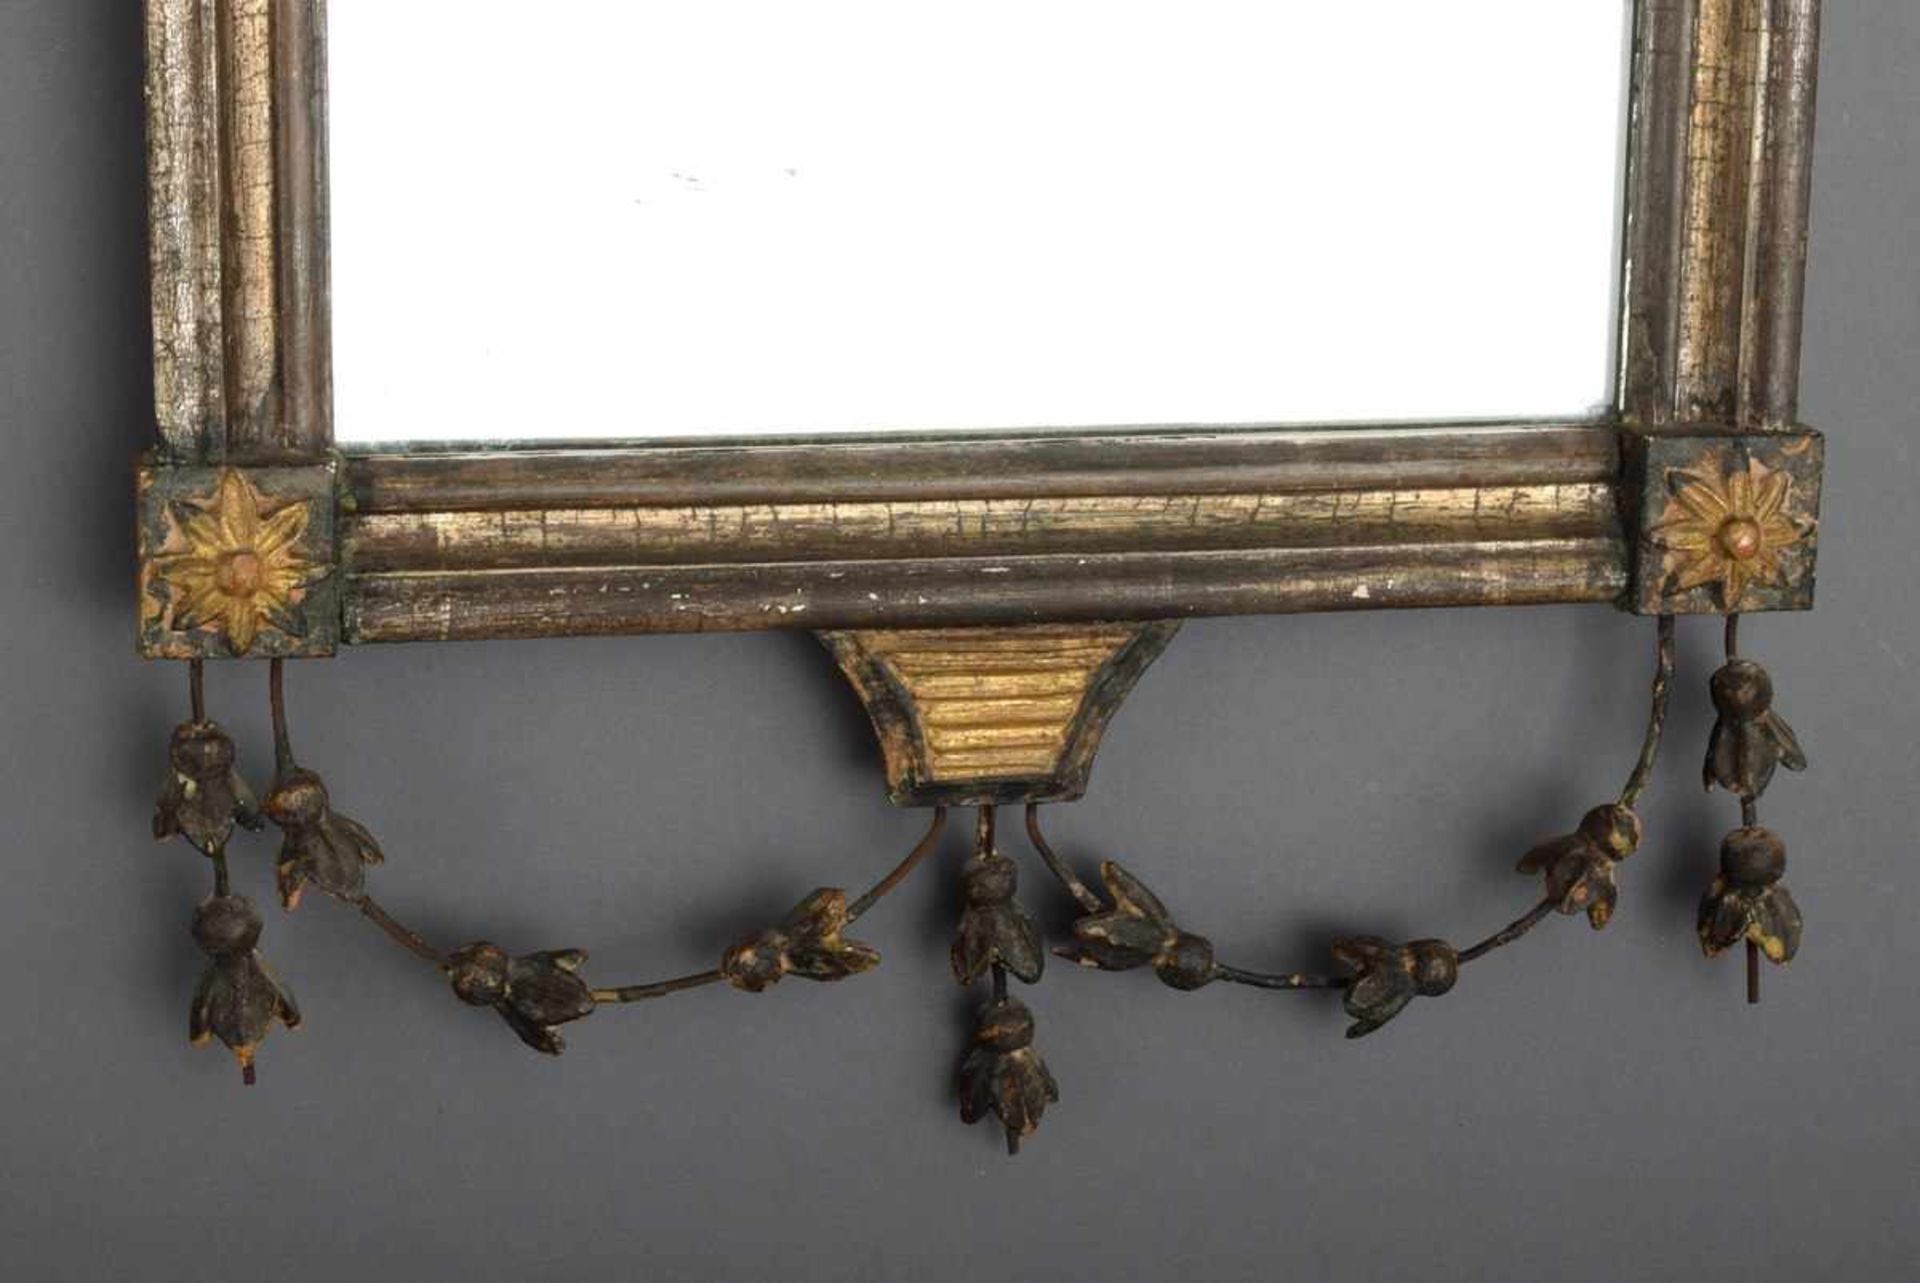 Klassizistischer Spiegel mit zierlicher Rankendekoration und aufgesetztem Spiegel, Ende 18.Jh., - Bild 3 aus 4